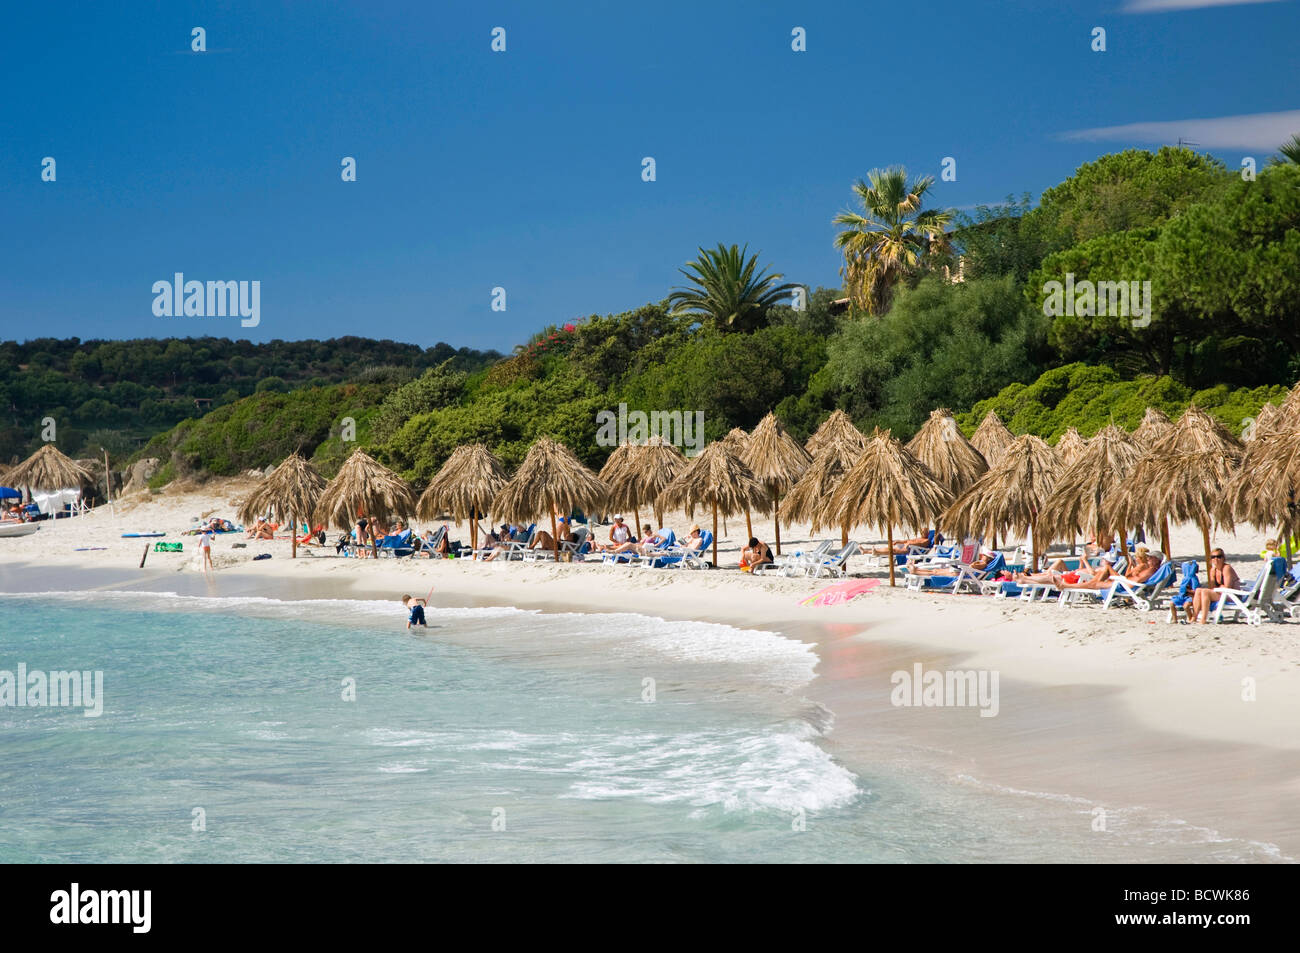 Sandy beach, parasols, Simius Playa, Villasimius, Sardinia, Italy, Europe Stock Photo